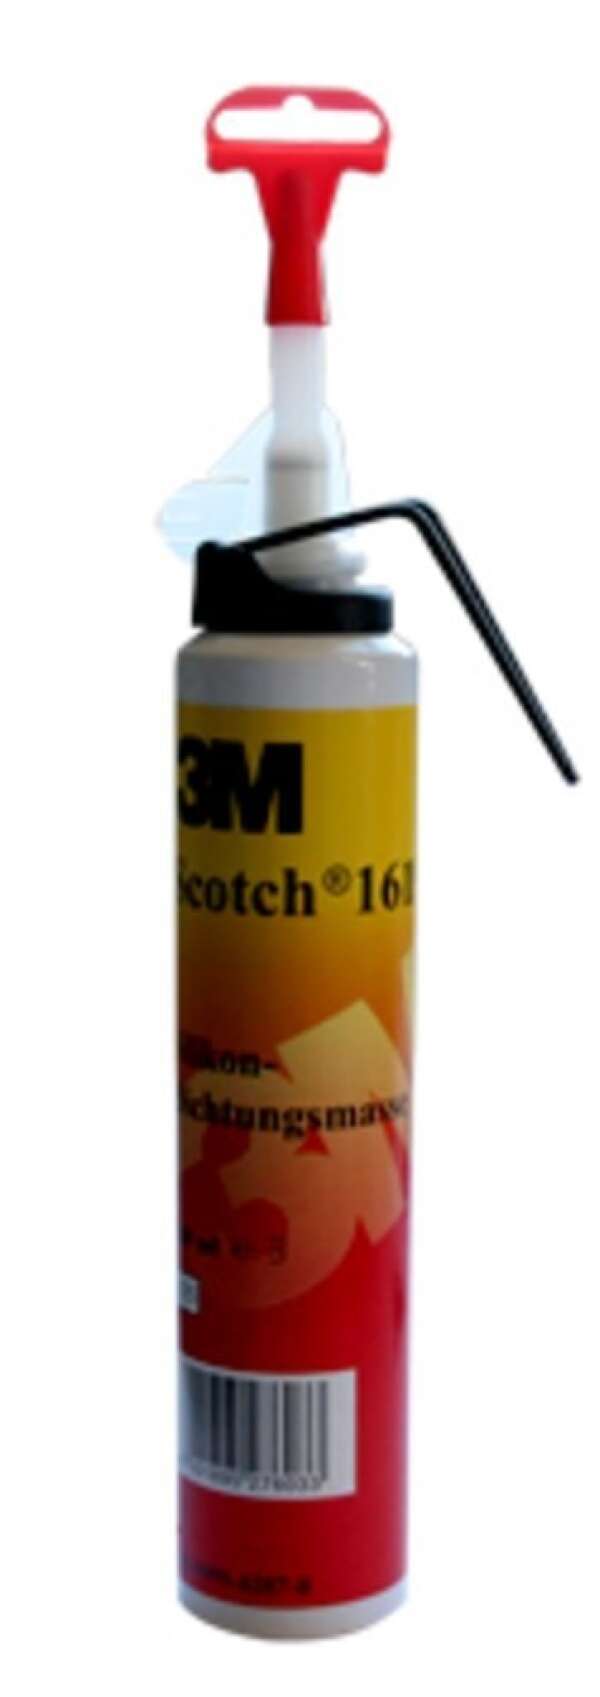 3M Scotch 1619 - аэрозоль силиконовая, изоляционная и уплотнительная масса, 200 мл